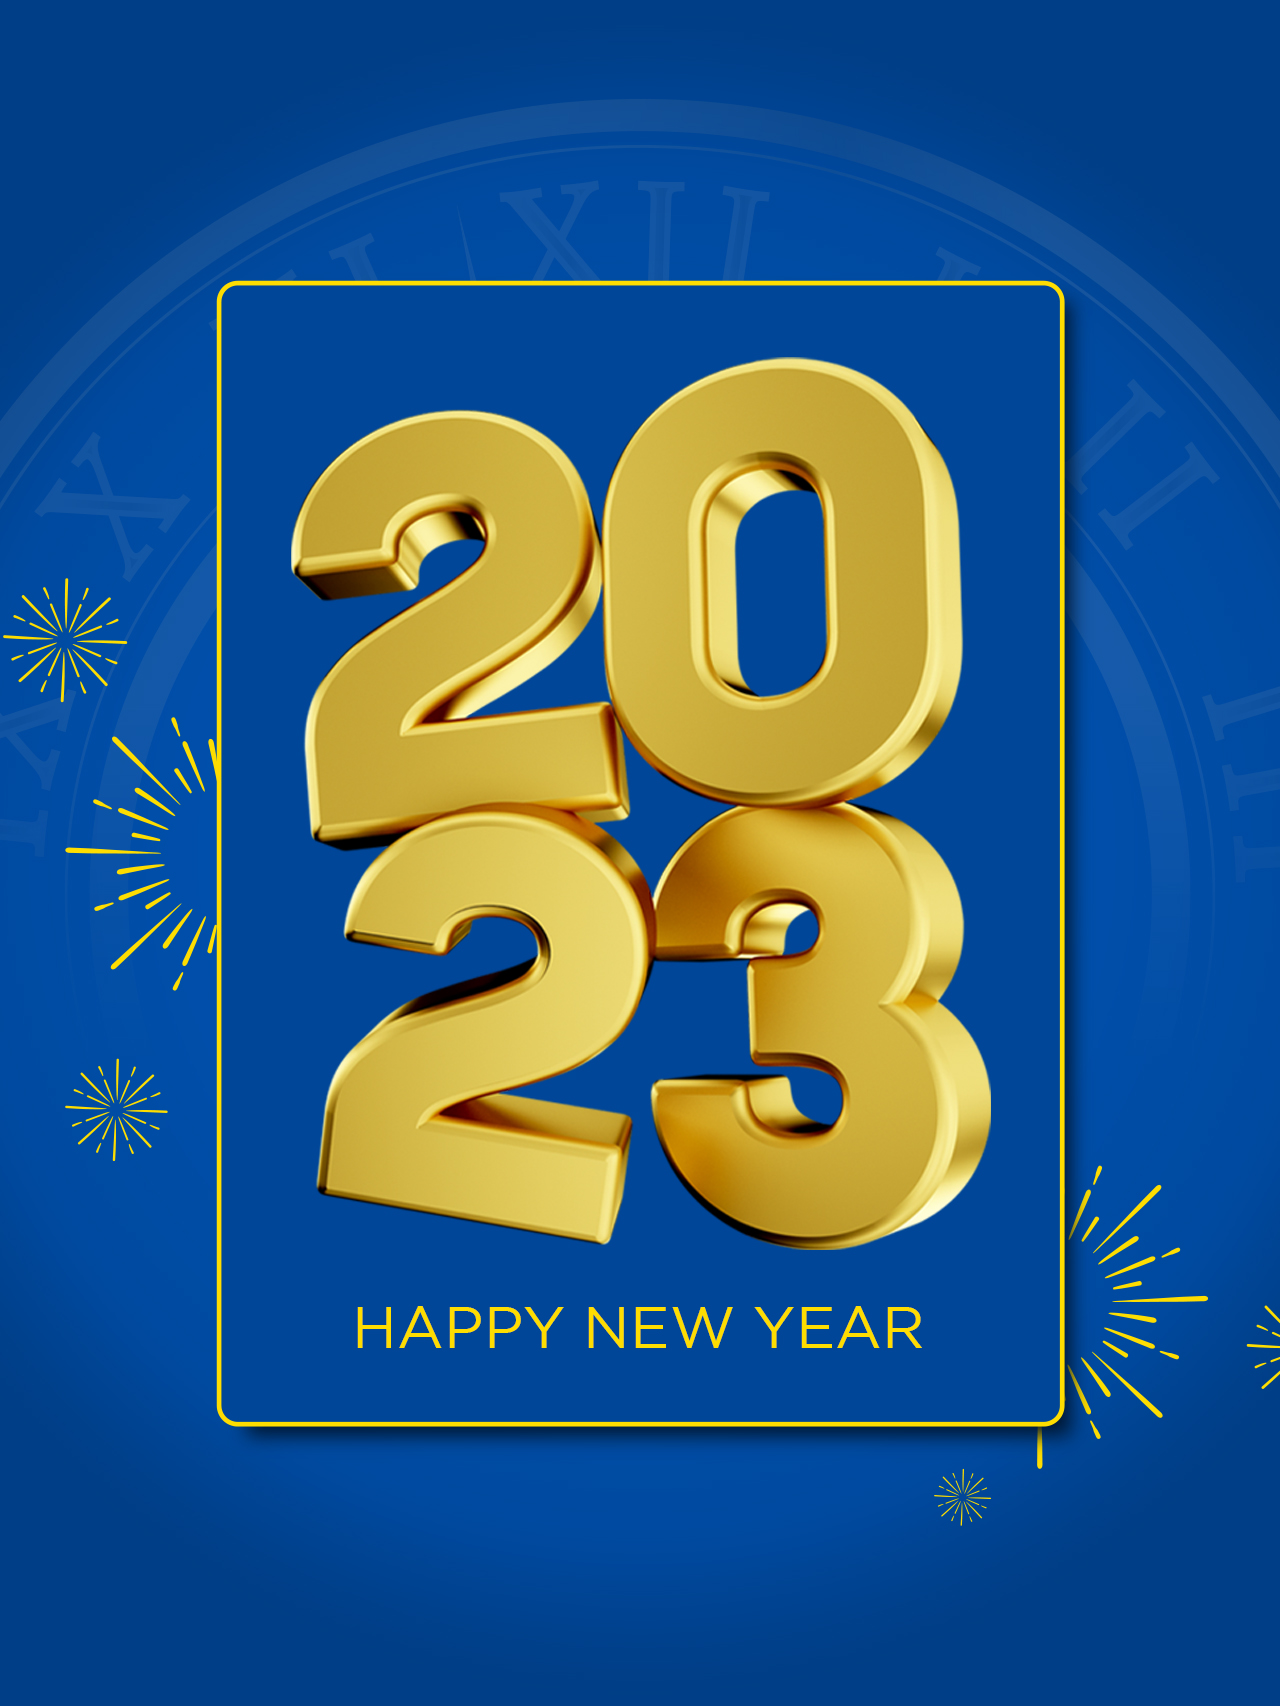 Menyambut Tahun Baru 2023, Tetap Bersama ONDA!